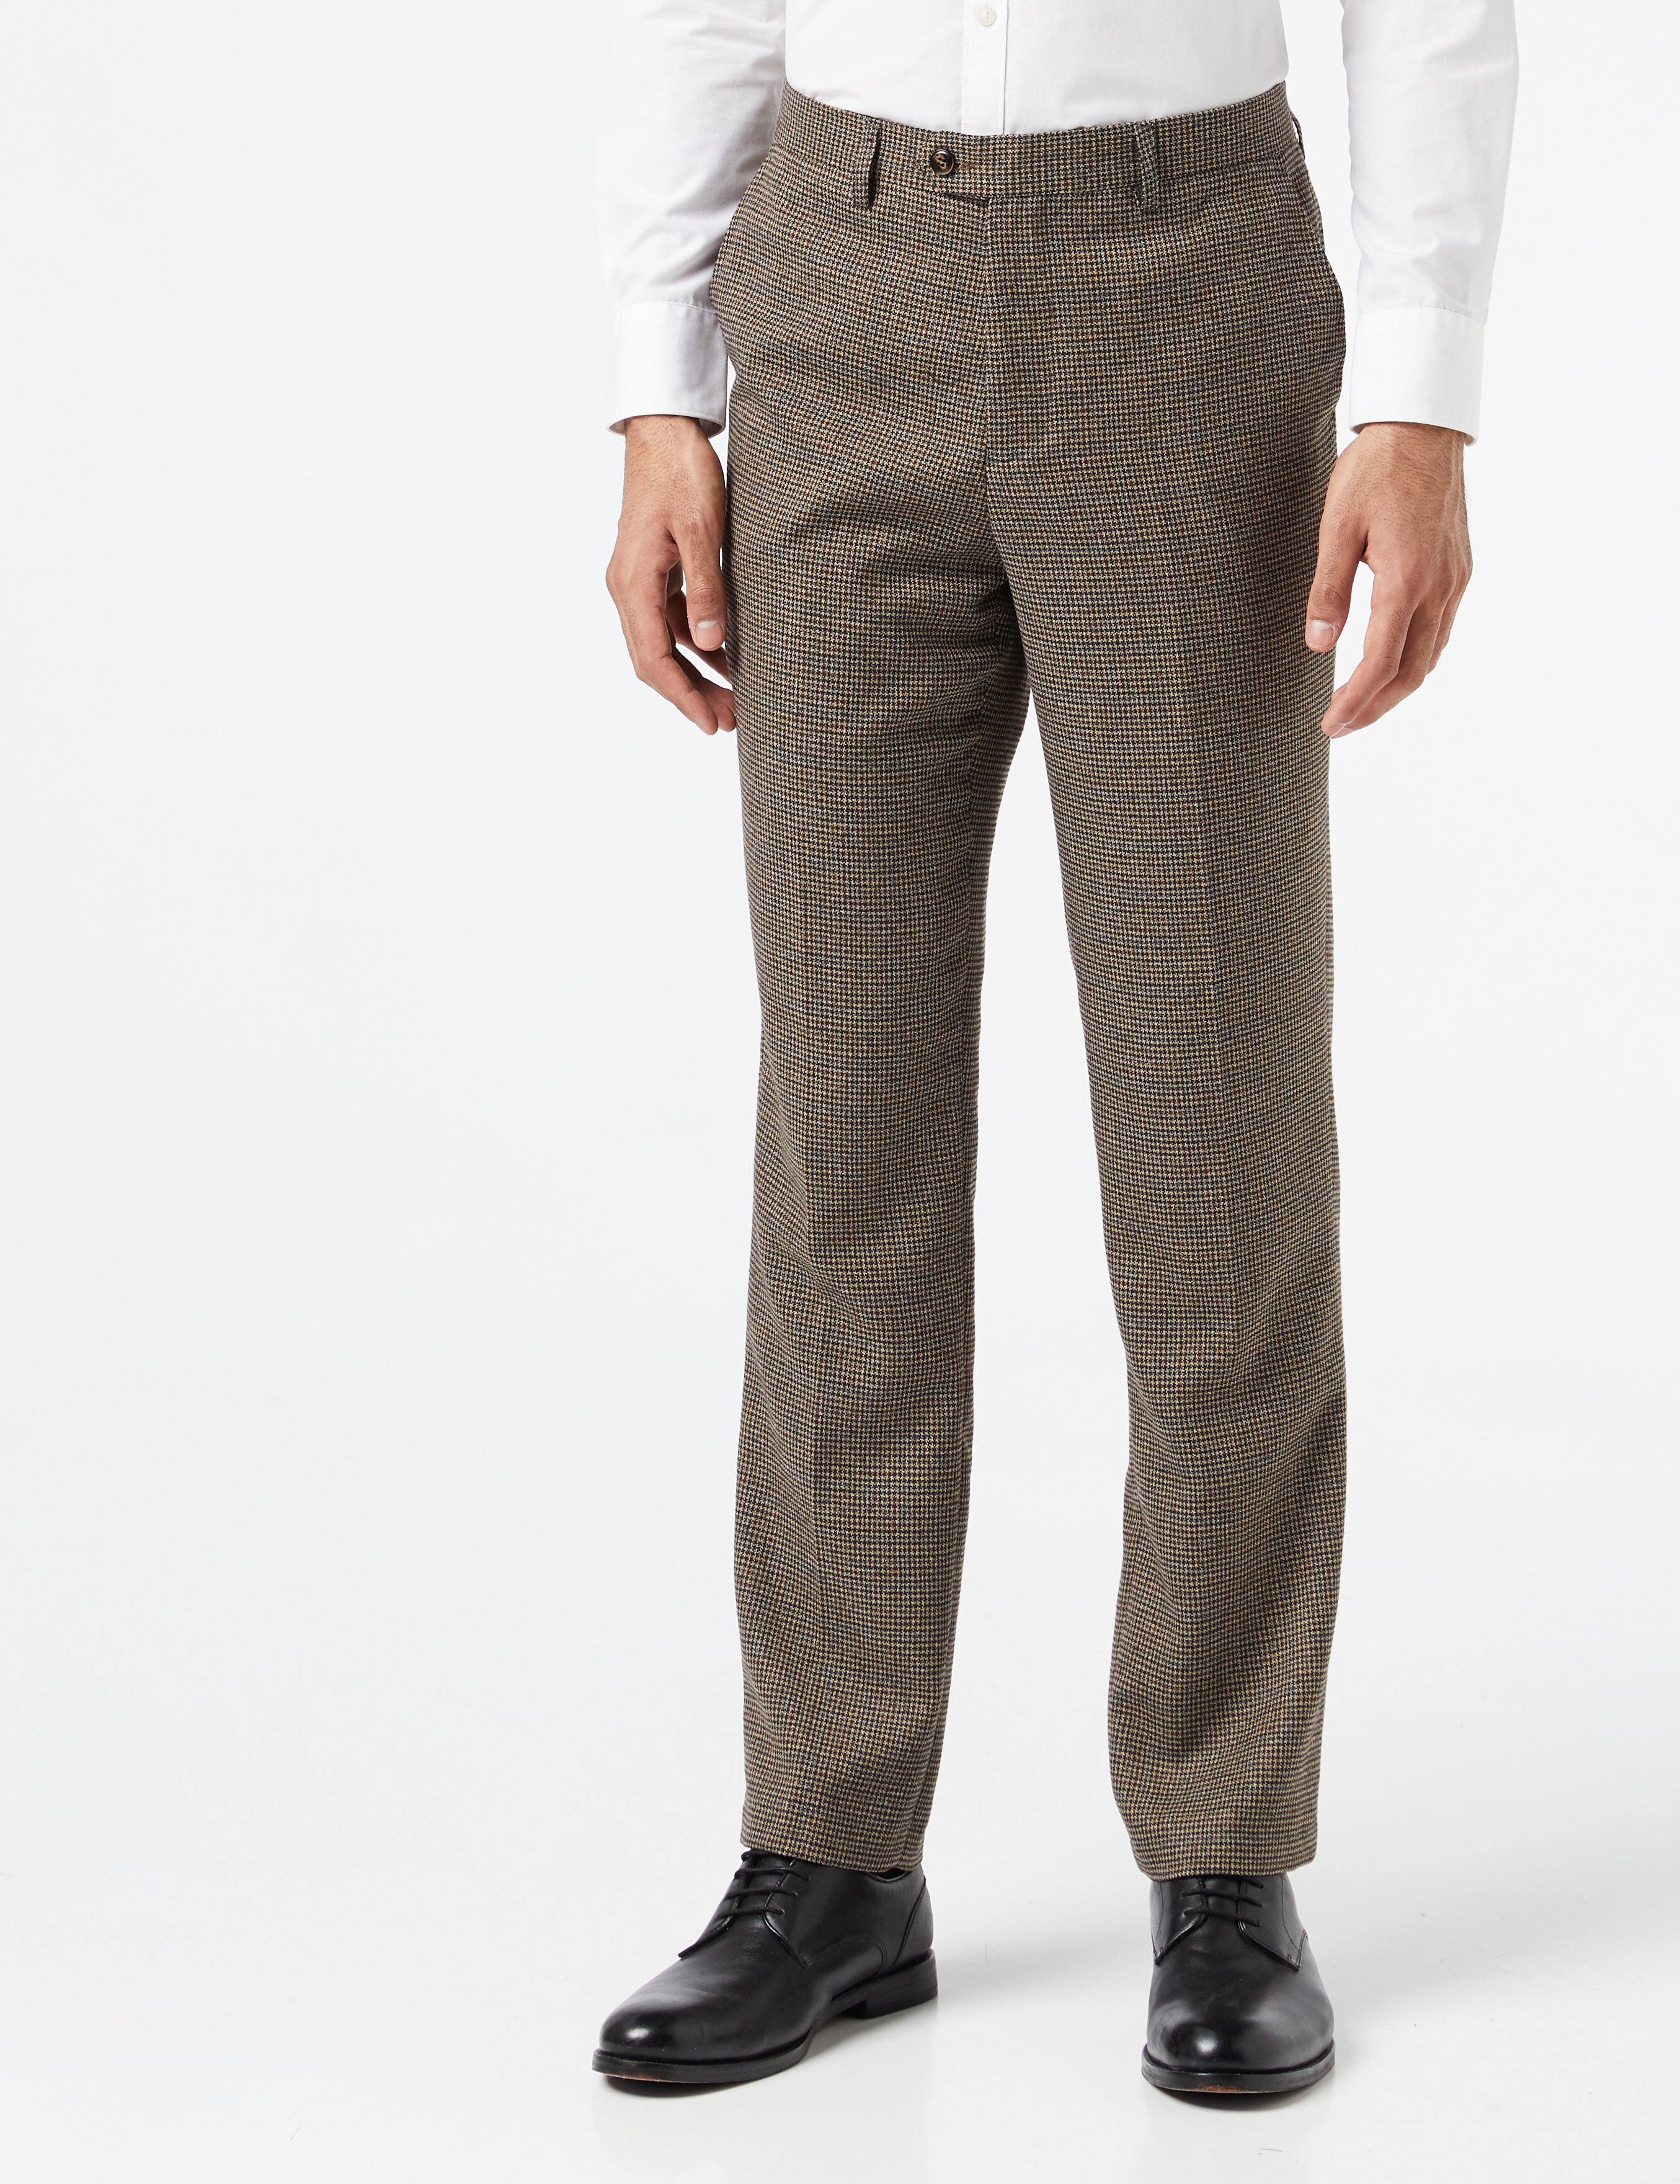 Edgar -  Mens Brown Check Tweed Vintage Tailored Fit Suit Pants